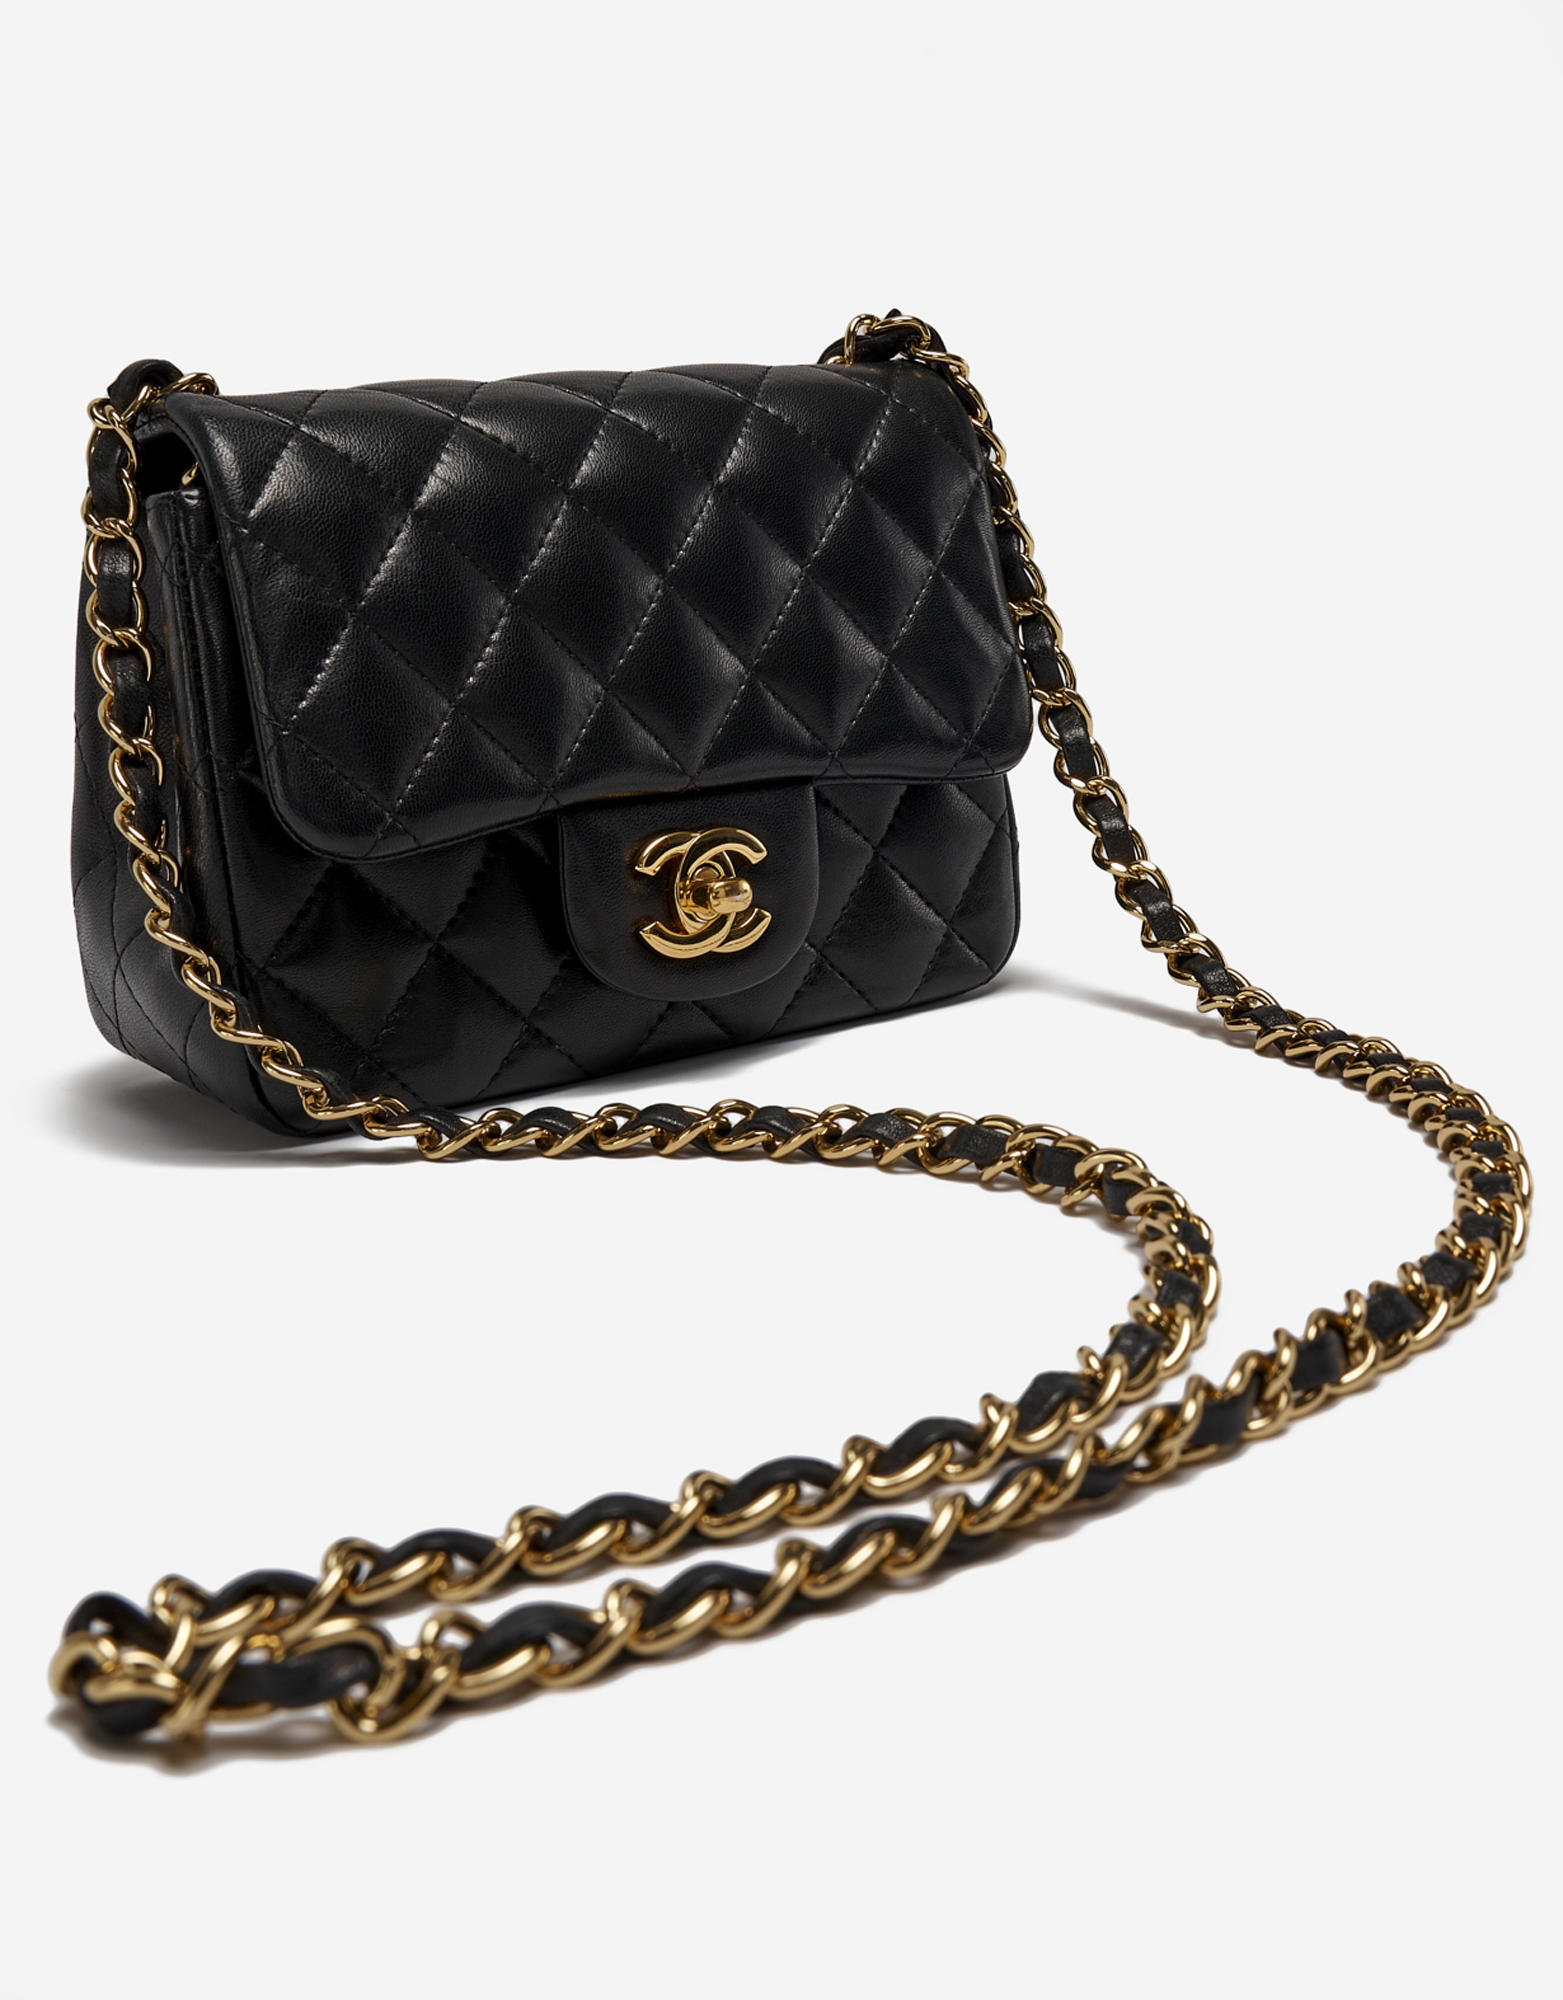 Chanel Mini Handbag Reviews